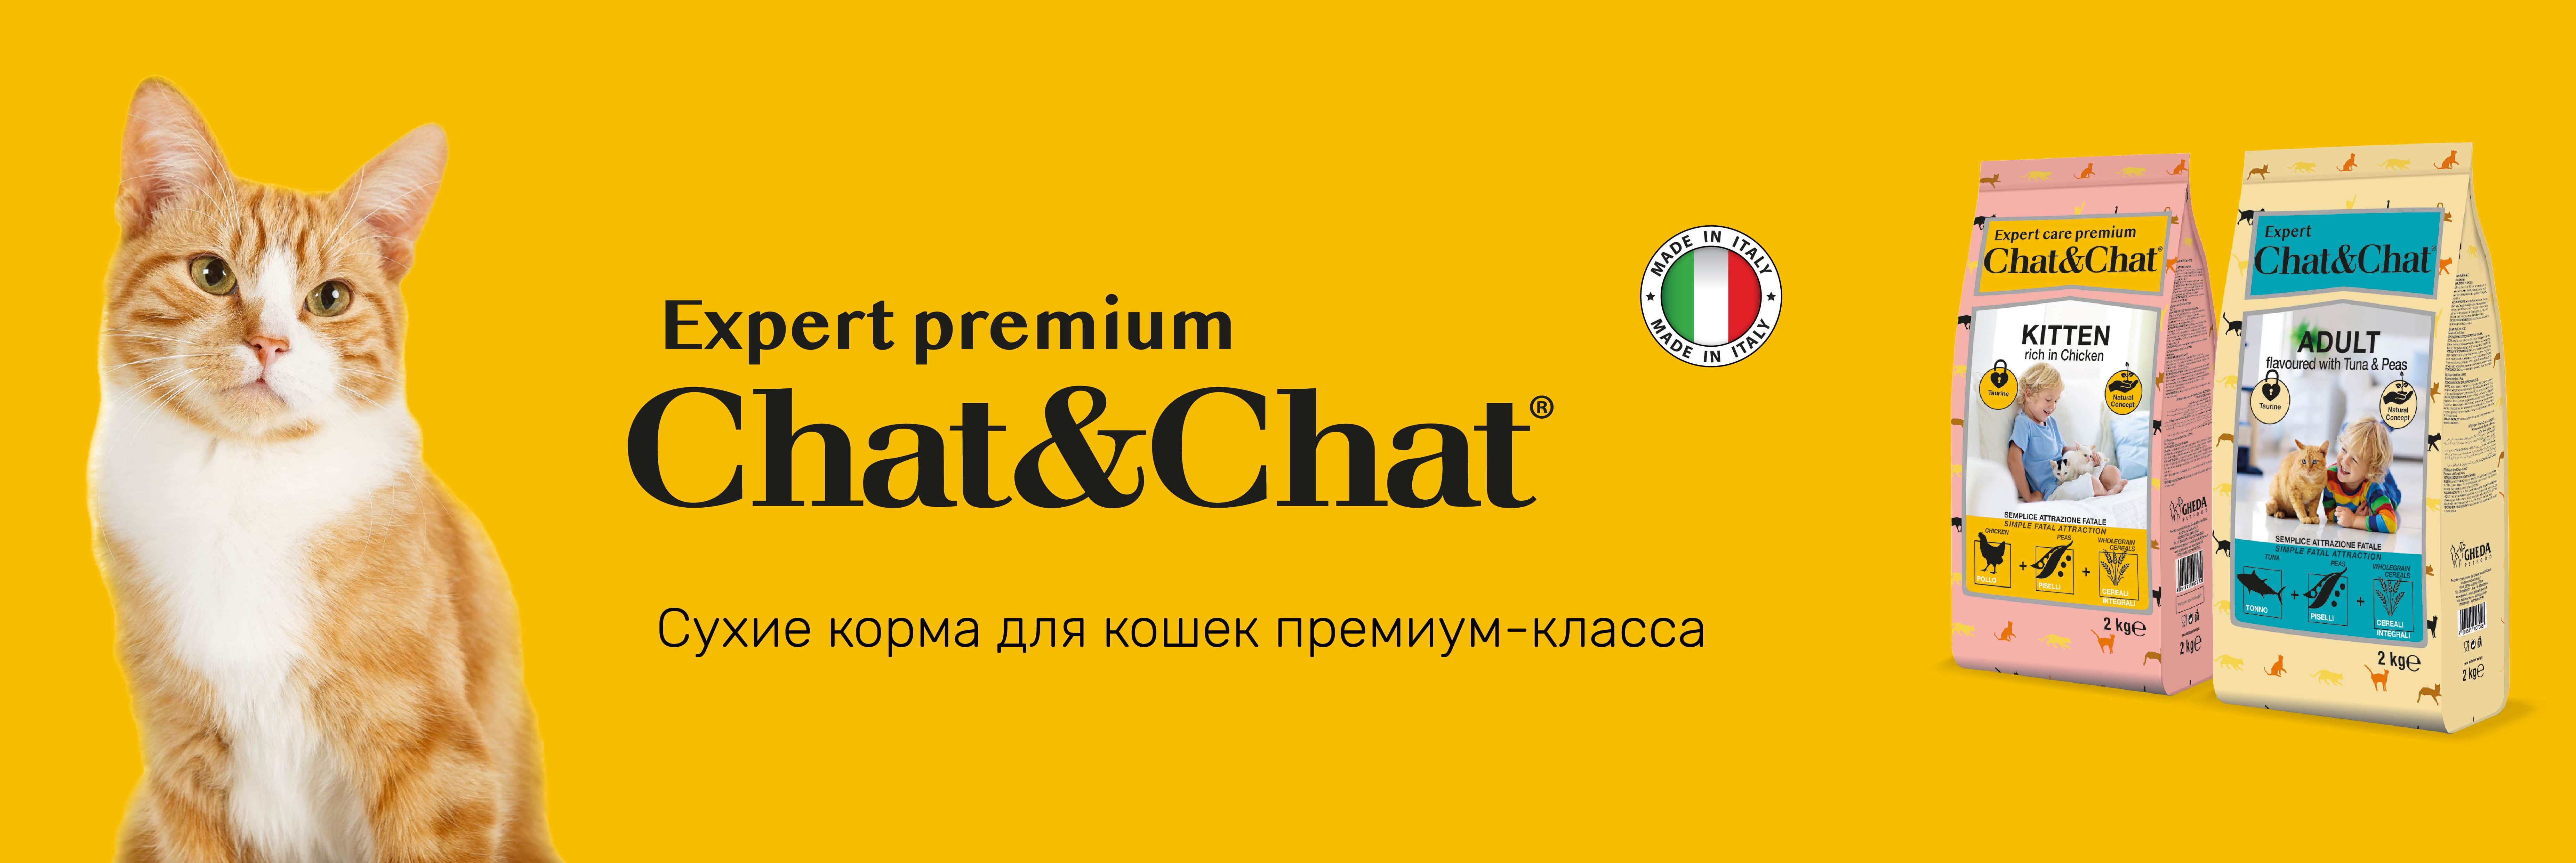 купить корма для кошек премиум-класса Chat&Chat с бесплатной доставкой в Калининграде